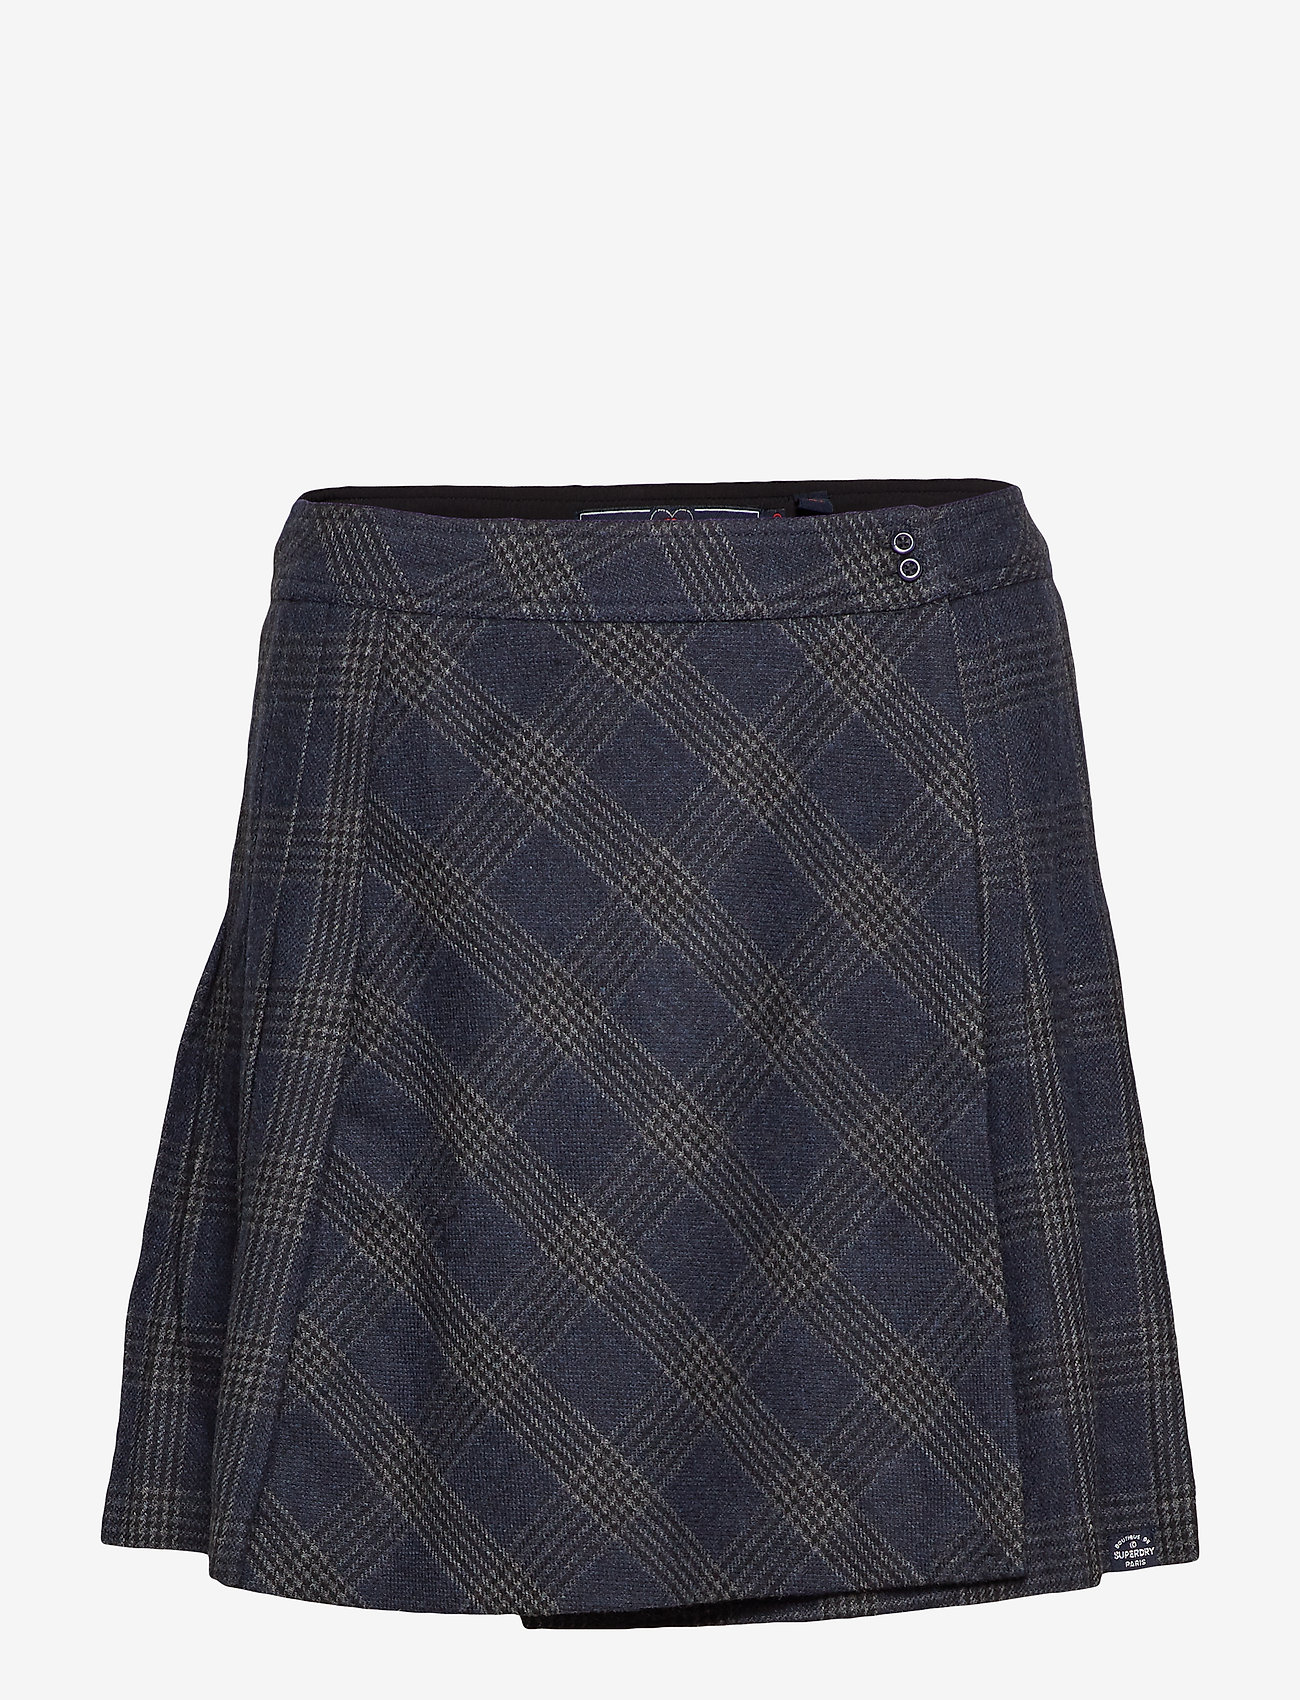 pleated tweed skirt